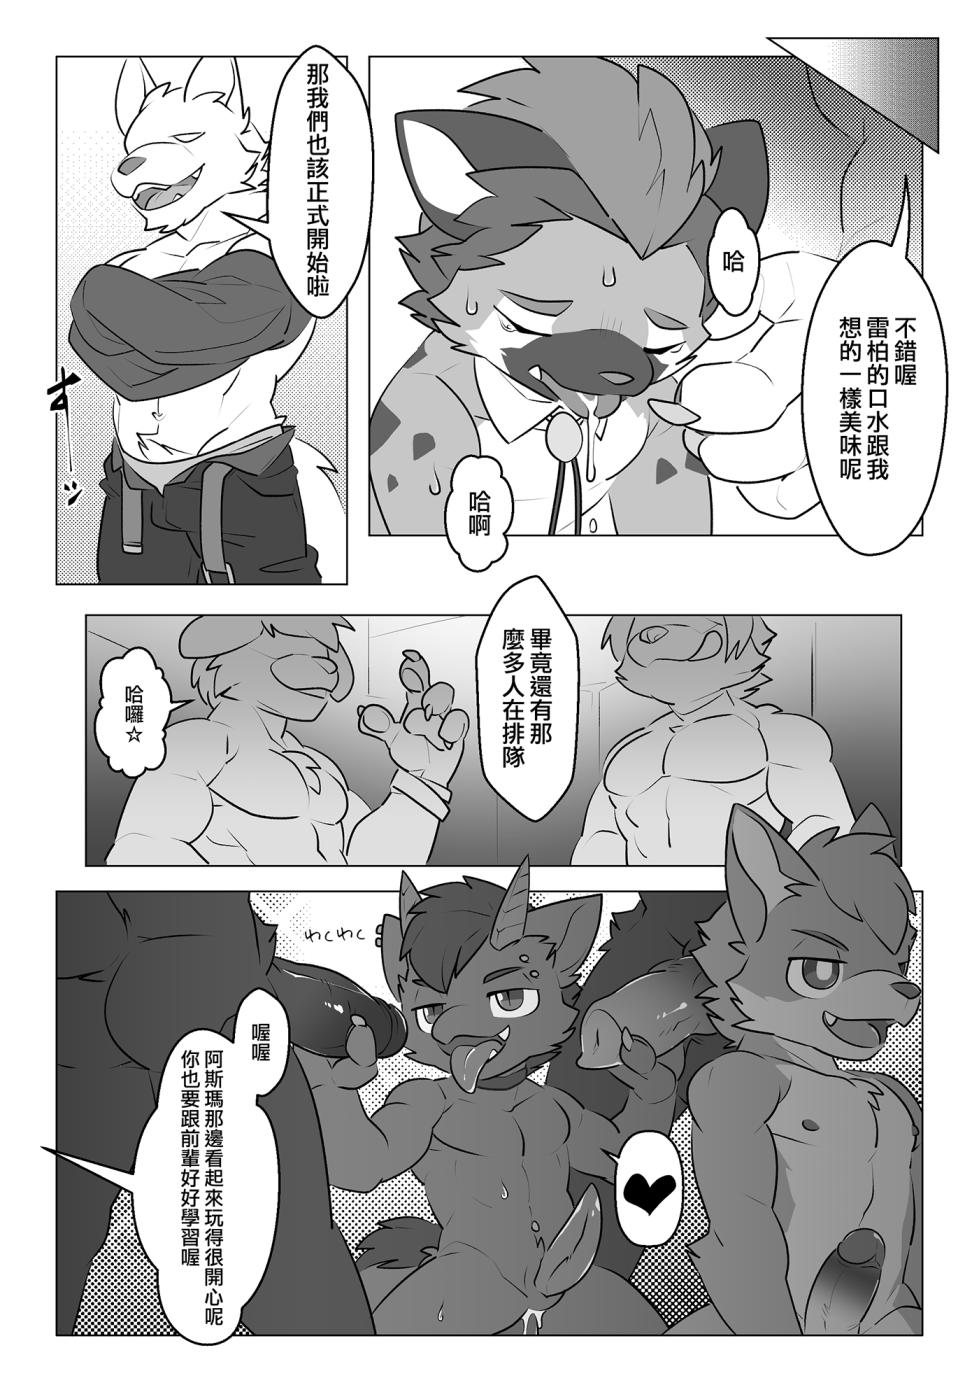 入精隨俗(digital ver) - Page 9